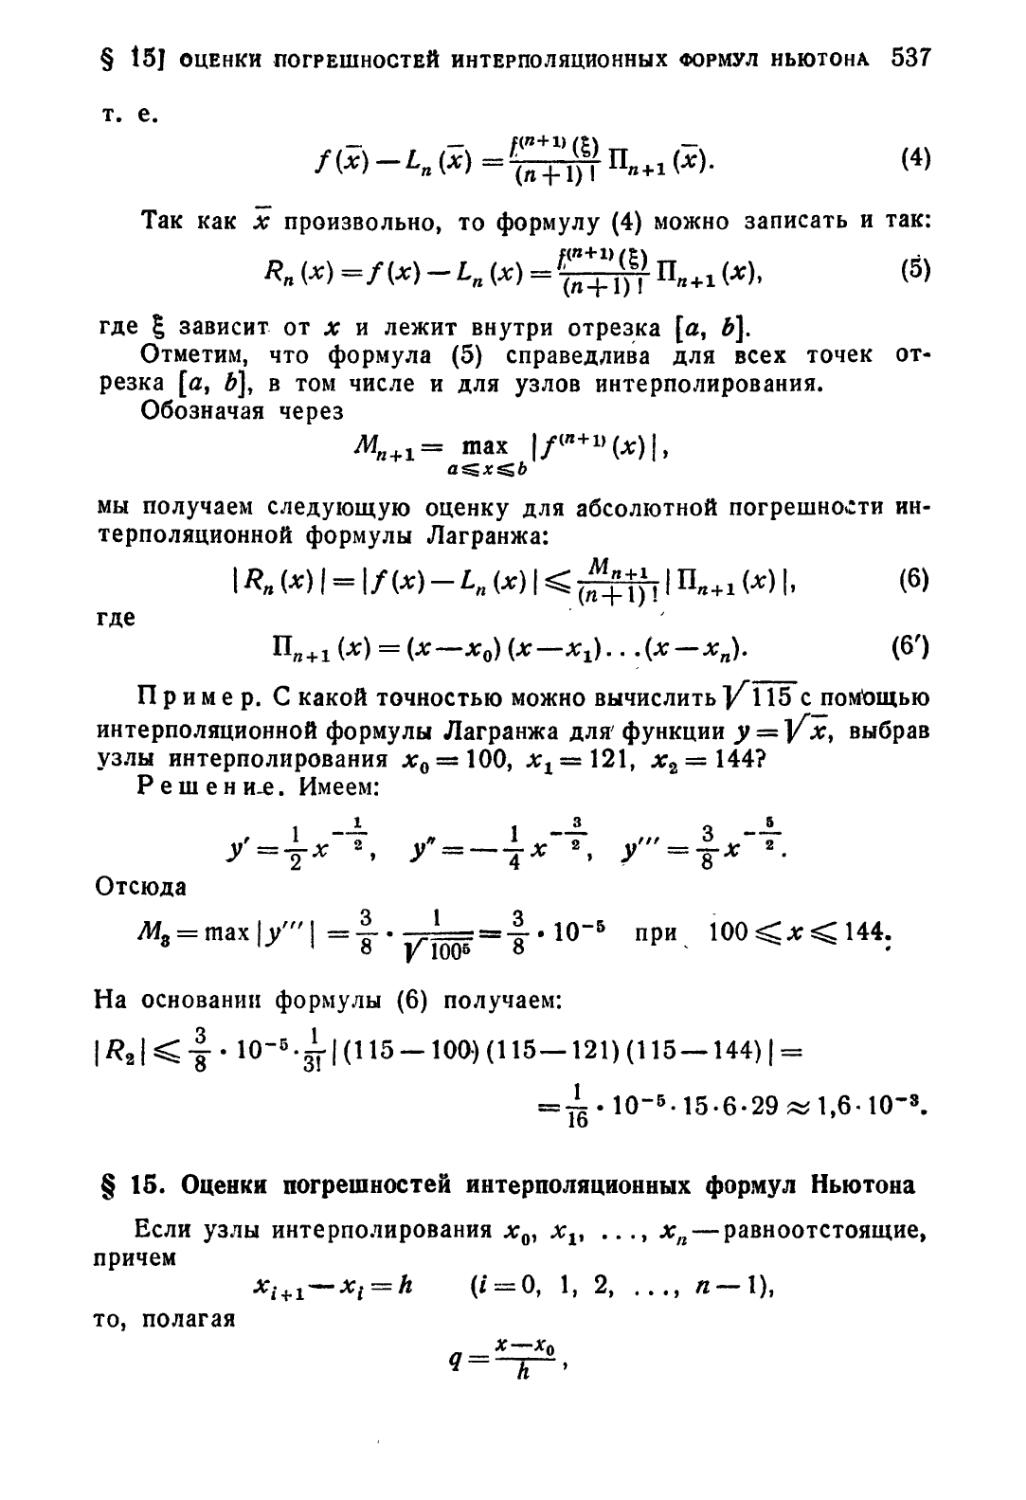 § 15. Оценки погрешностей интерполяционных формул Ньютона